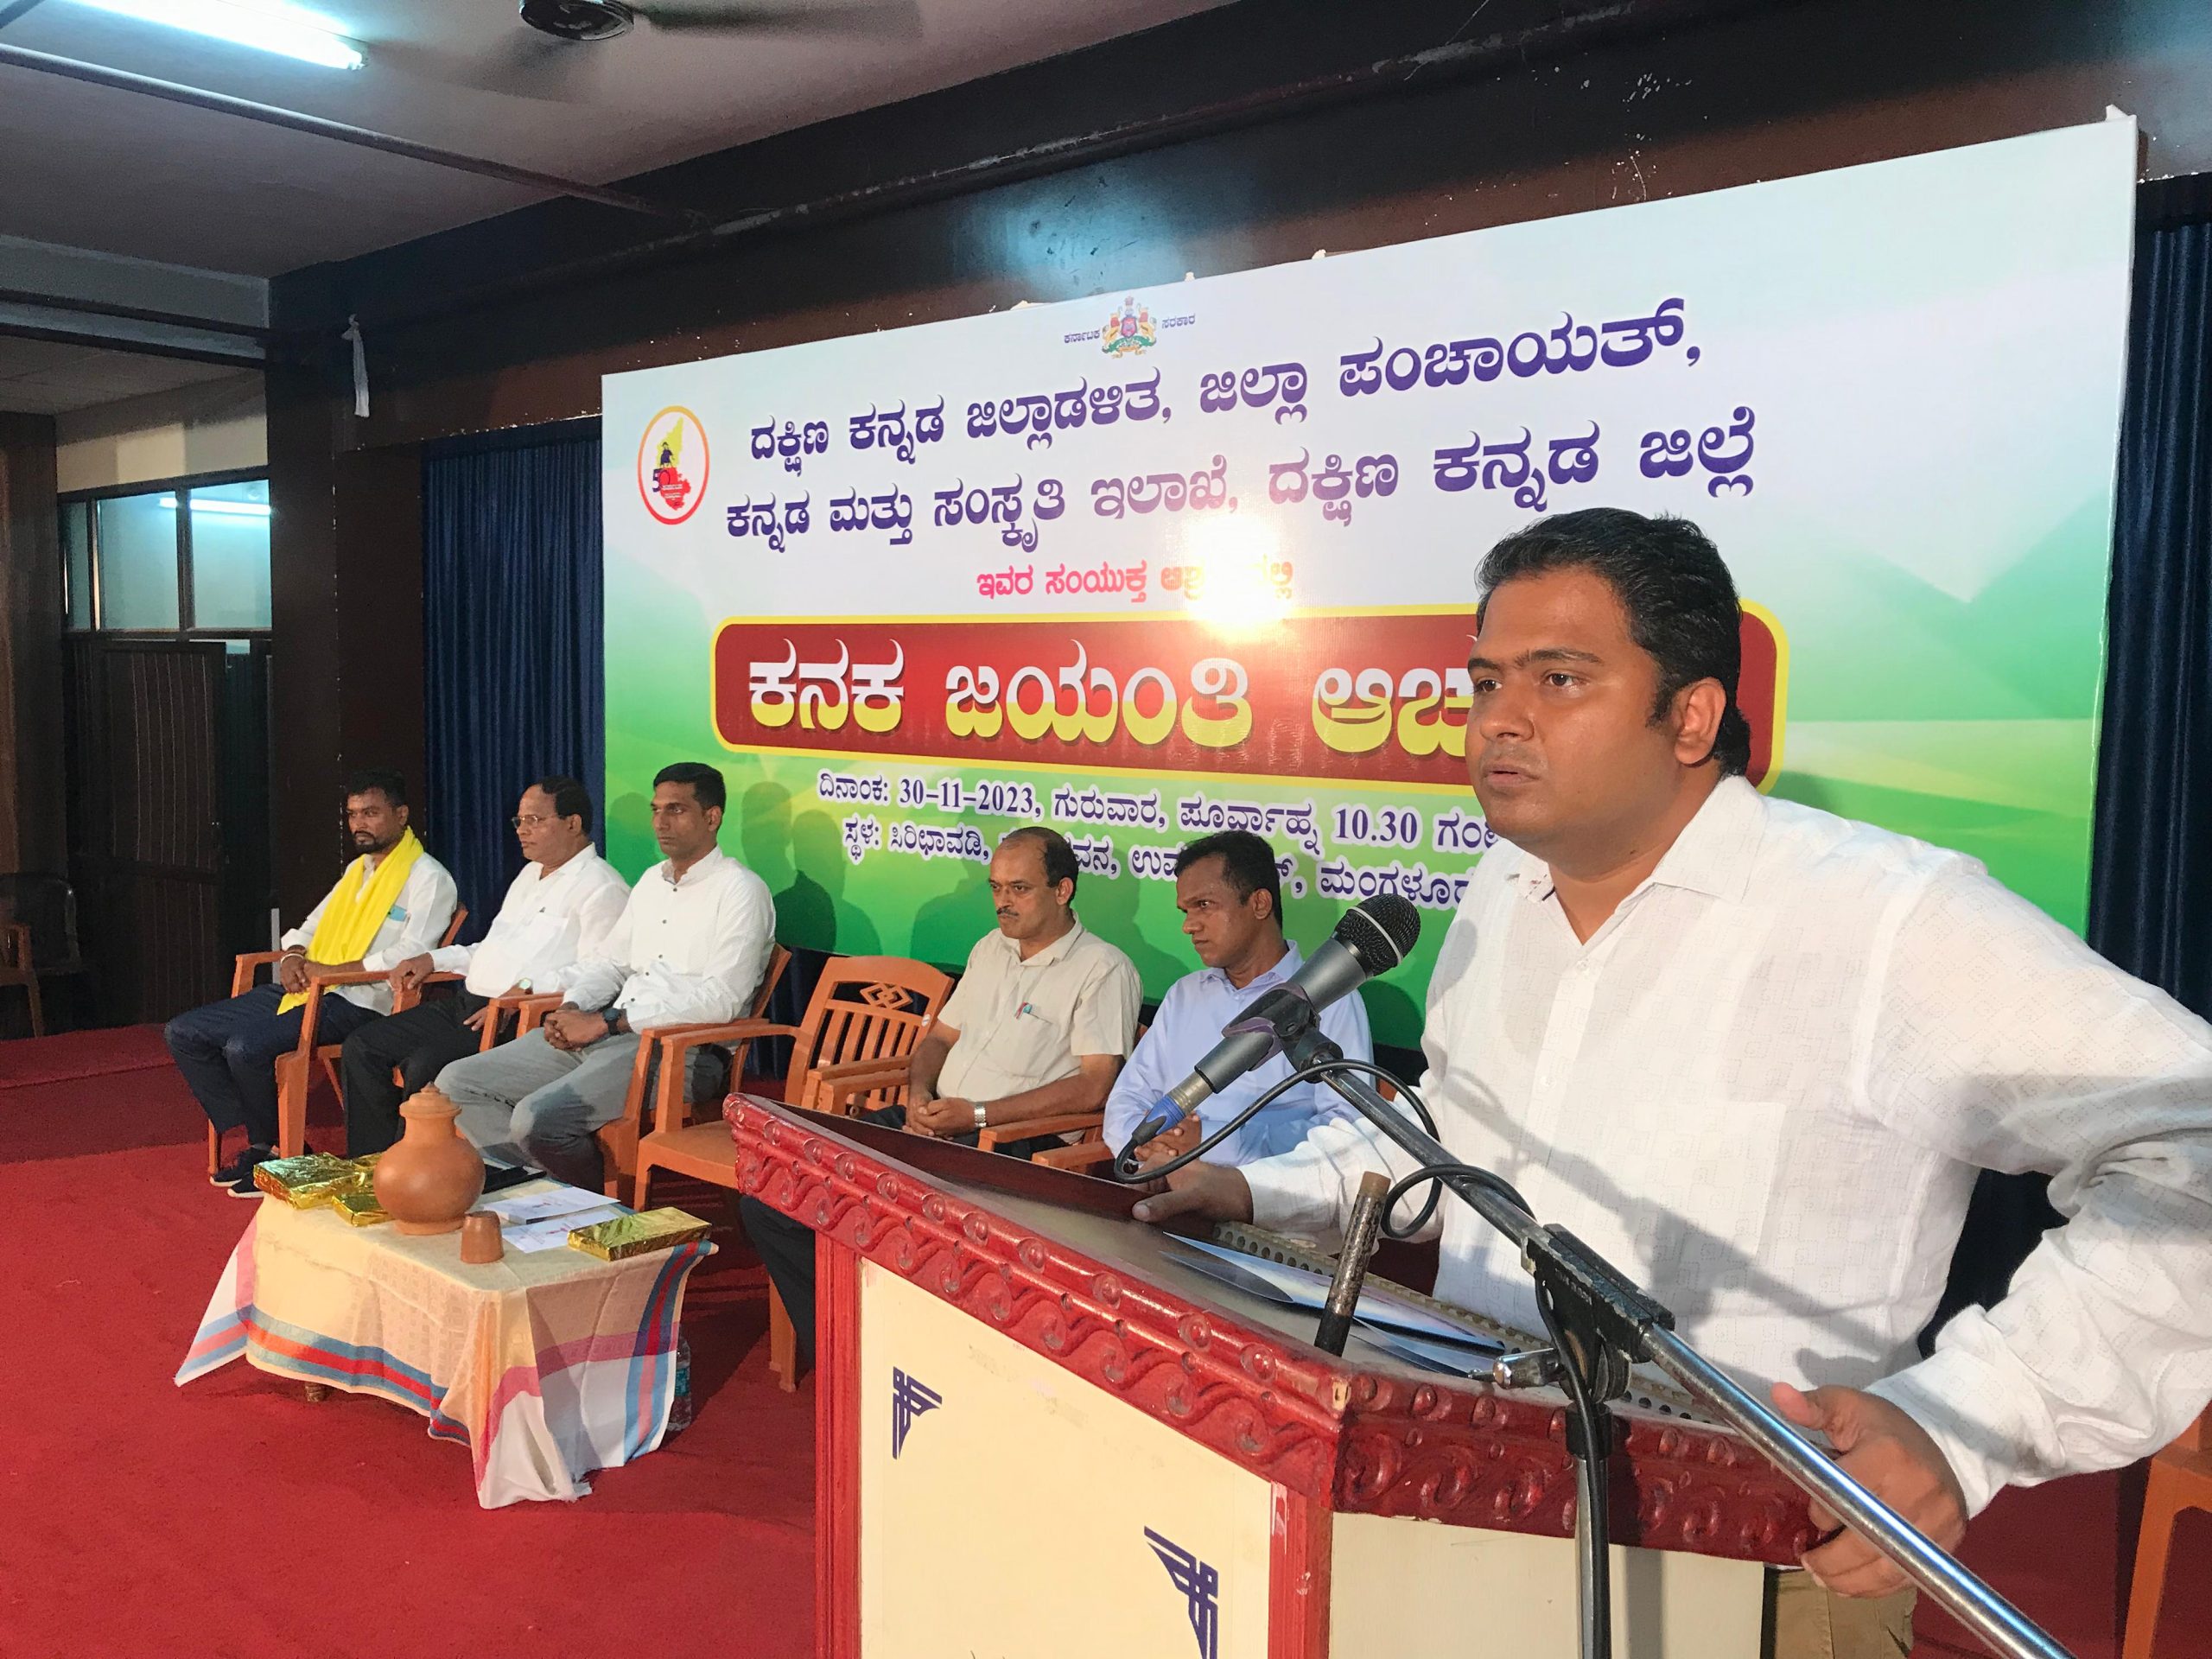 Mangaluru Gathers to Commemorate Kanakadasa Jayanti, Embracing Ideals of Unity and Selflessness